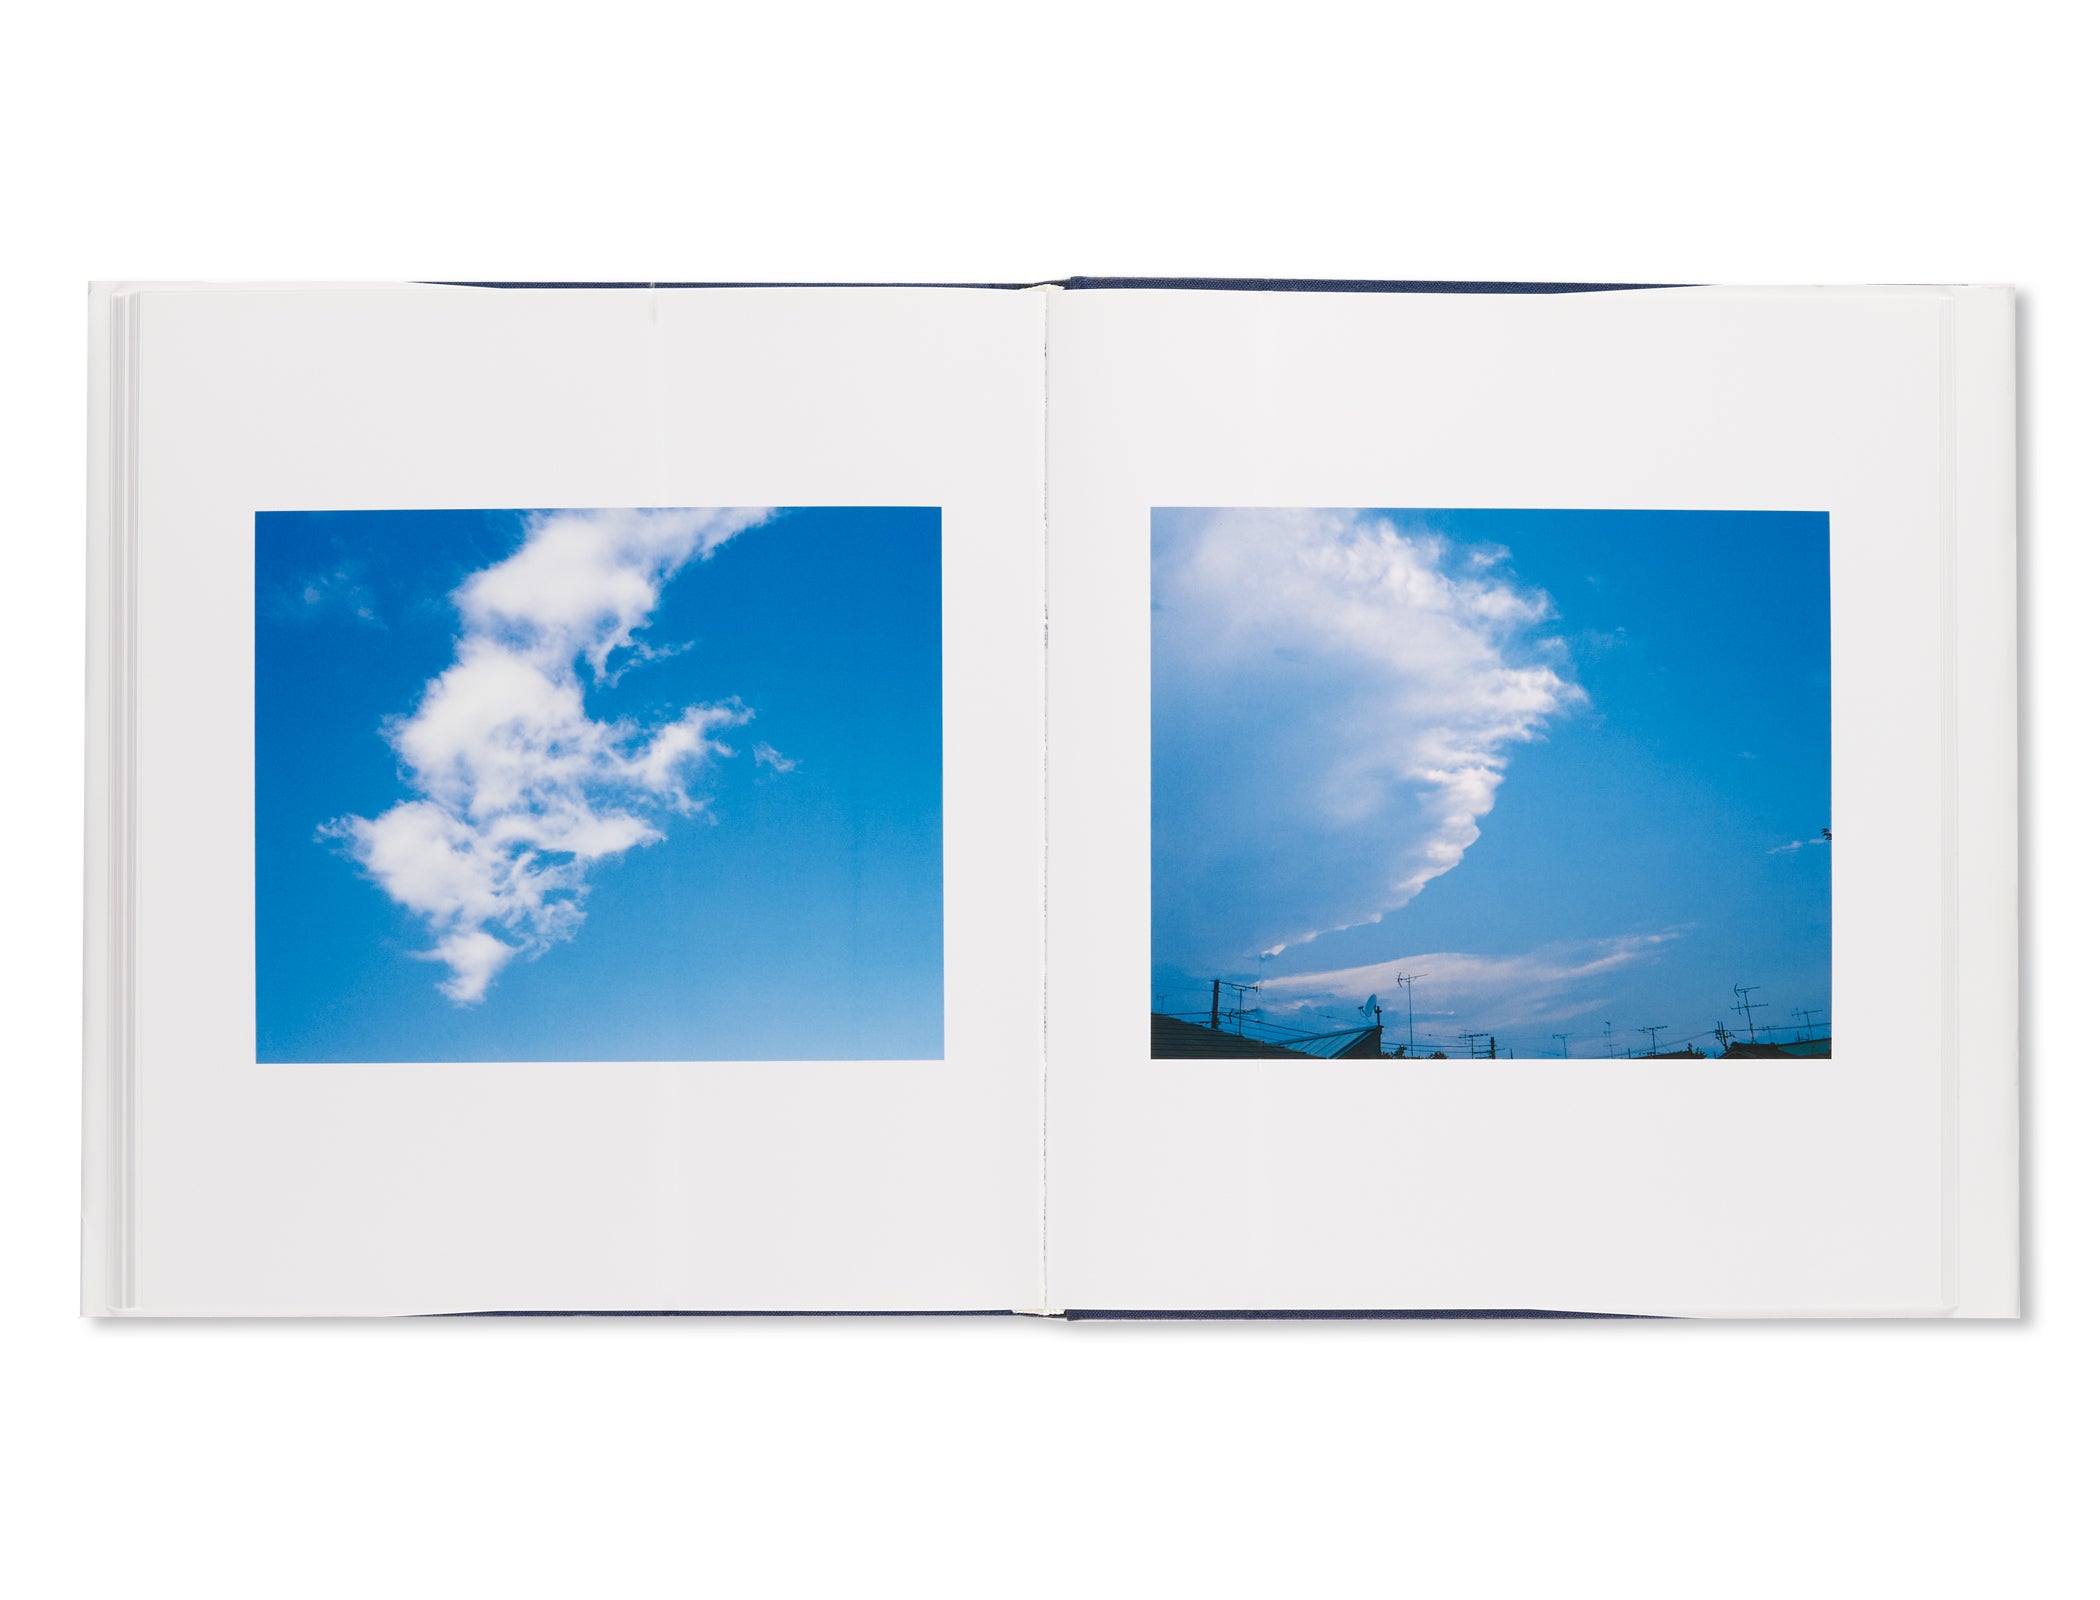 センチメンタルな空 / SENTIMENTAL SKY by Nobuyoshi Araki